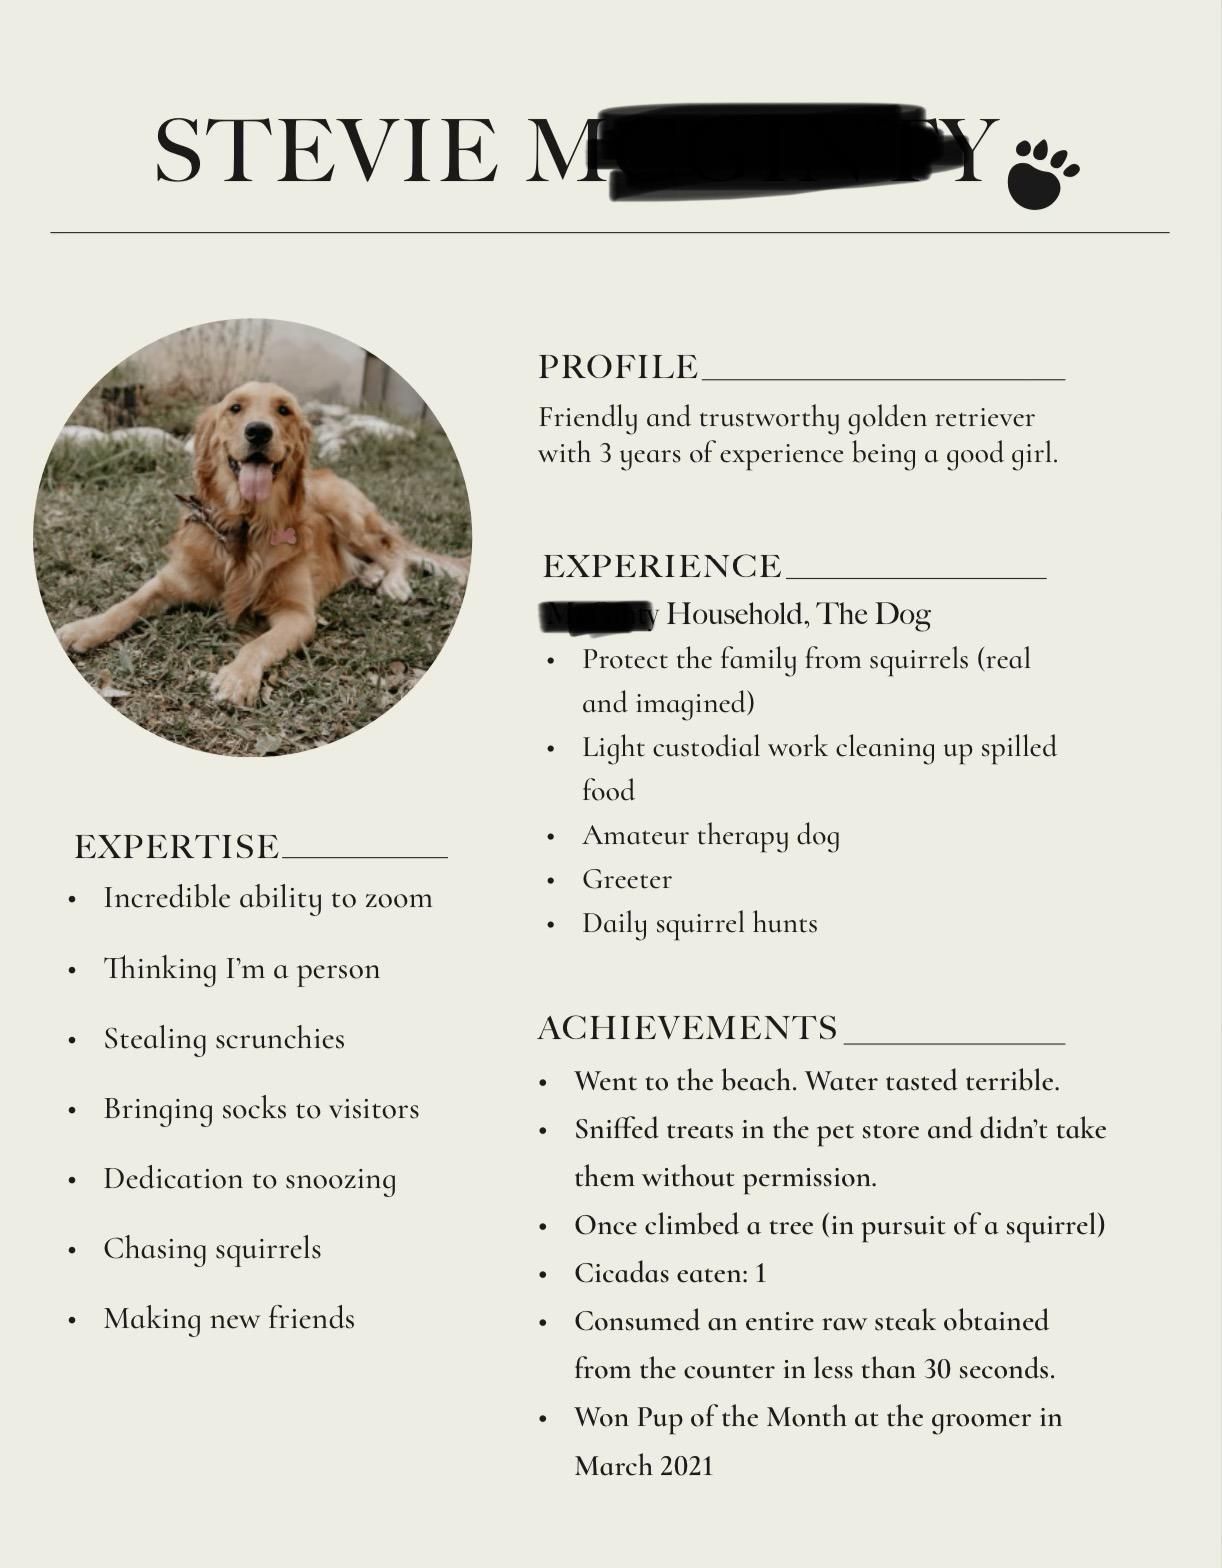 My friend made a résumé for her dog